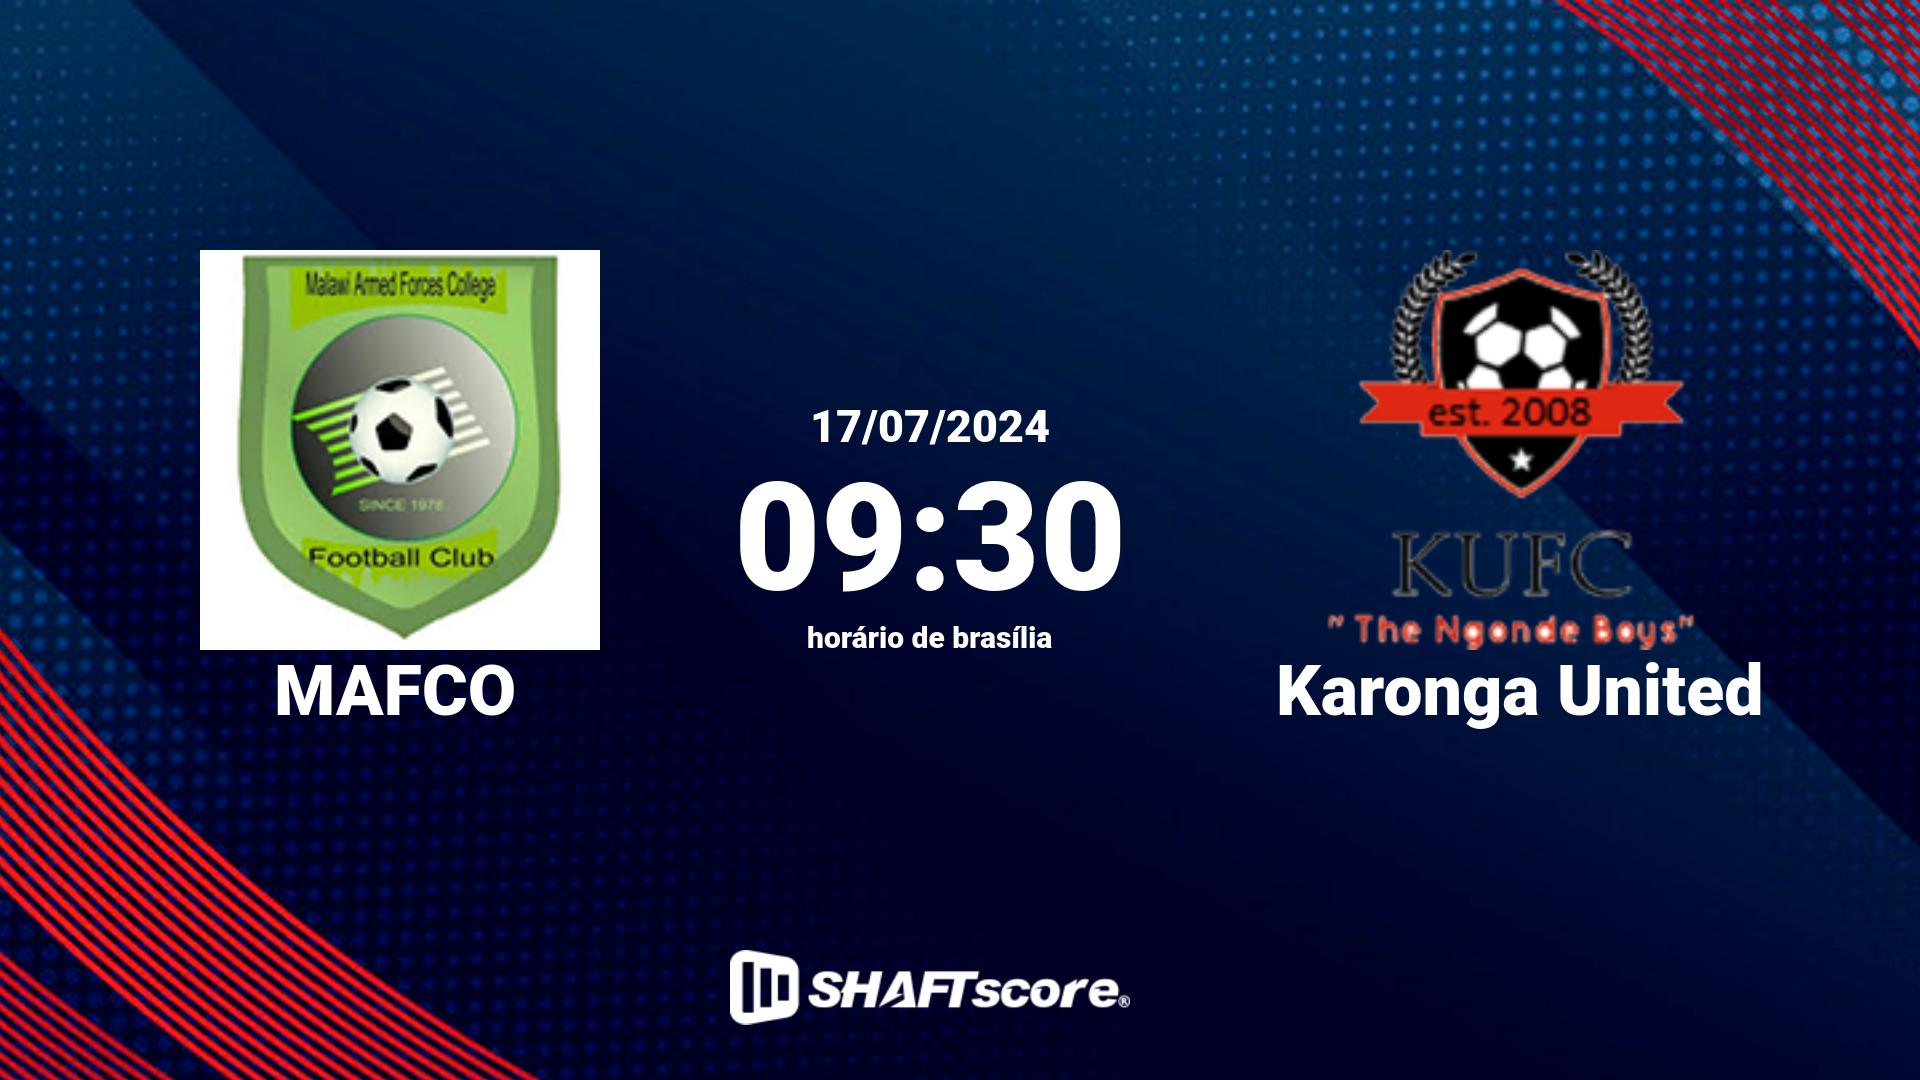 Estatísticas do jogo MAFCO vs Karonga United 17.07 09:30